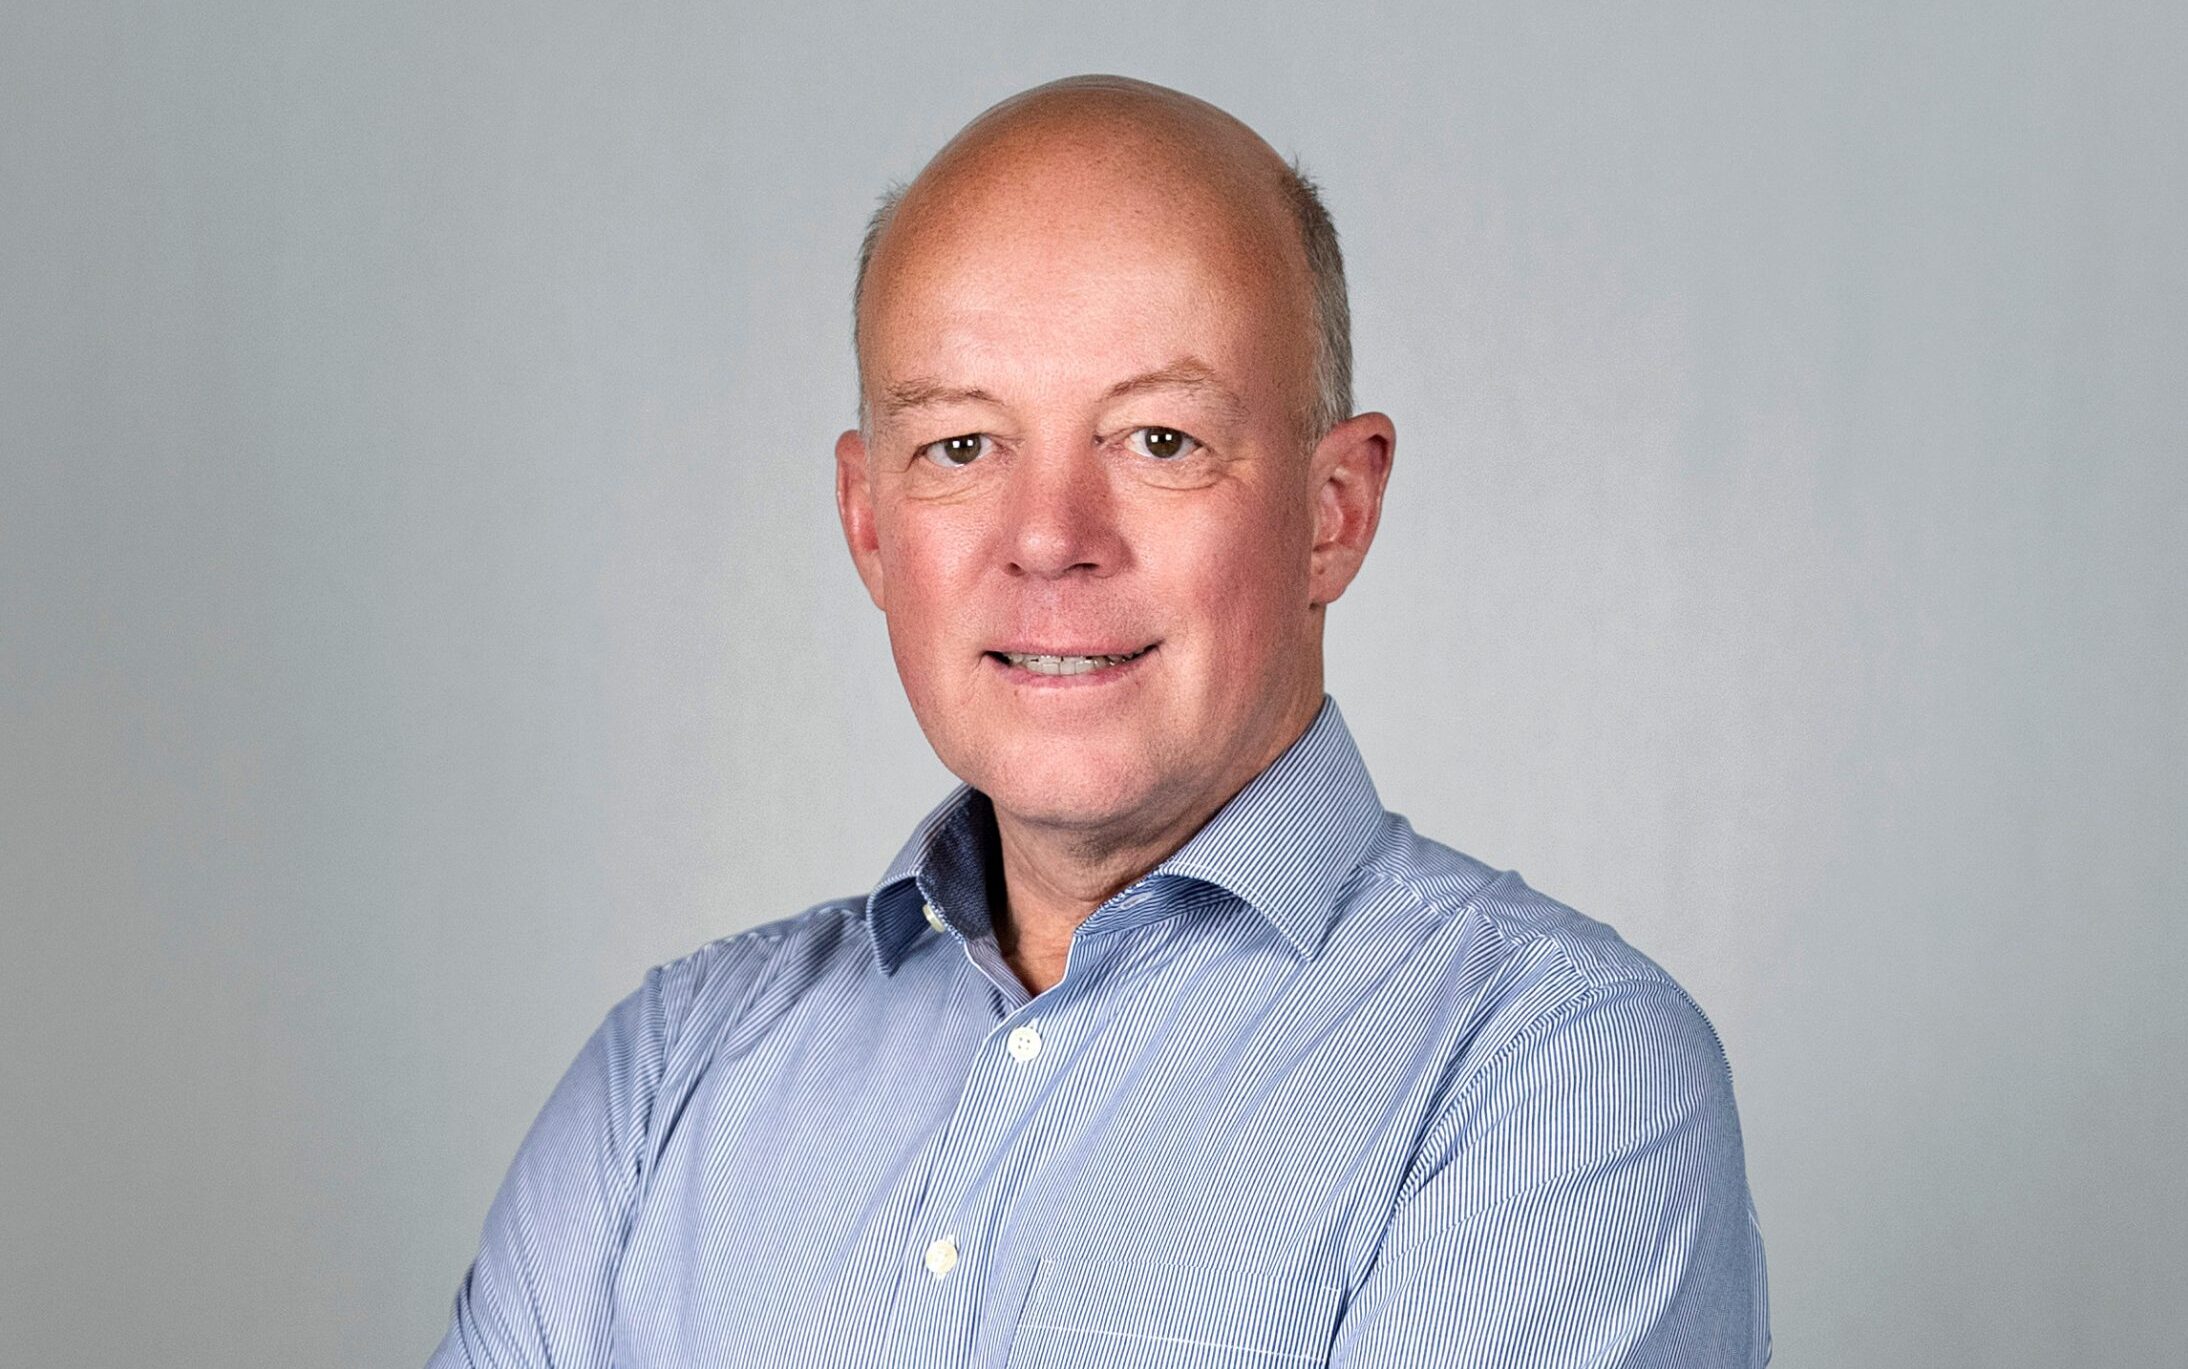 Lars Lönnquist är ansvarig förvaltare på Spiltan Högräntefond och Räntefond Sverige. Foto: Pressbild.